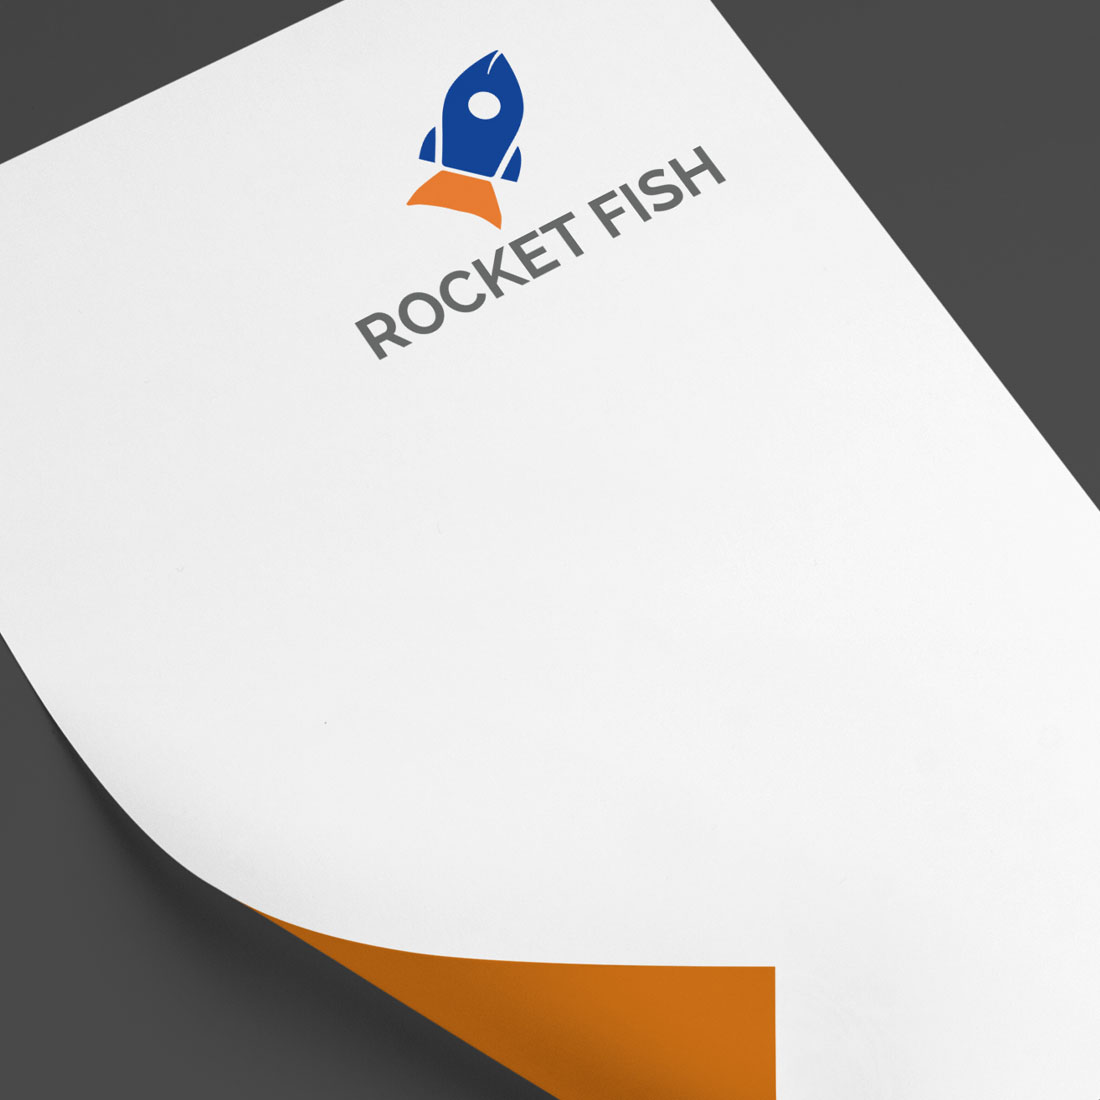 Minimal Rocket Fish Logo Design preview image.